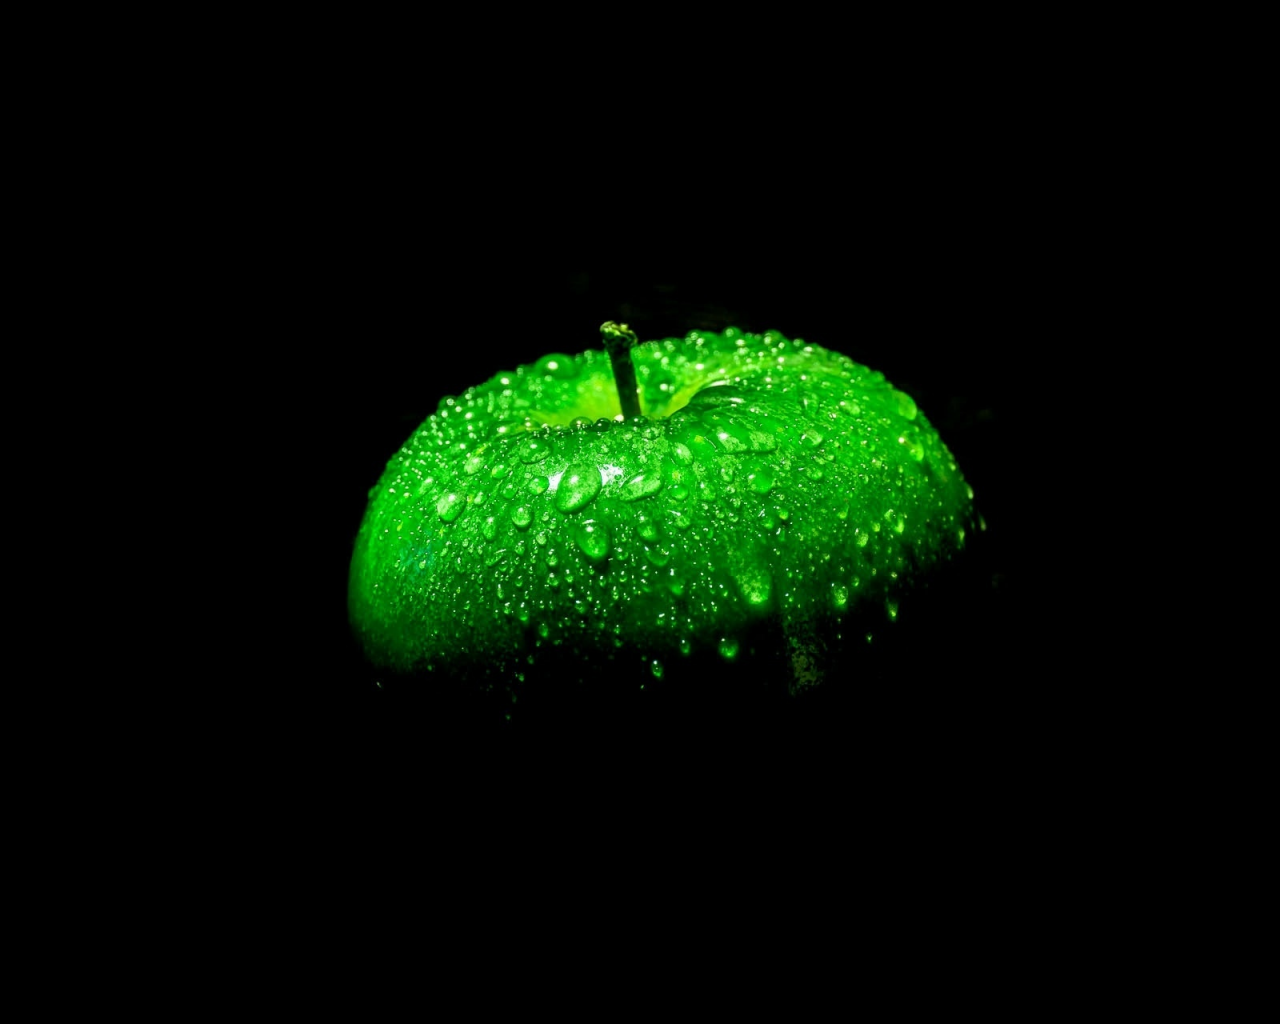 черный фон, яблоко, зеленое